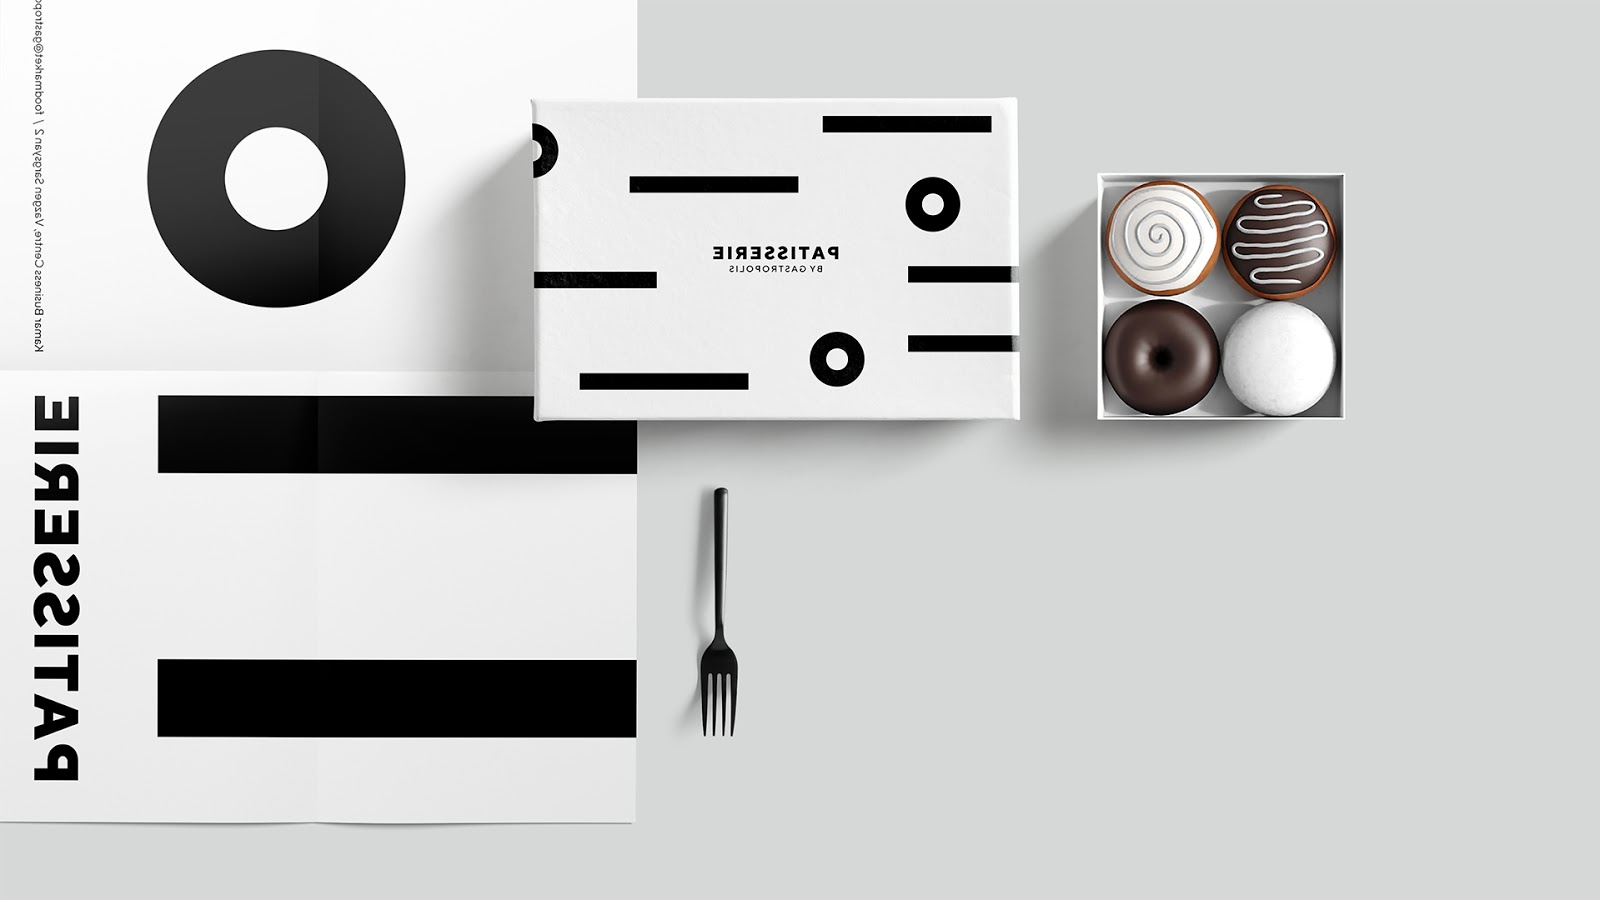 快餐简餐甜品面包咖啡西安欧亿体育‧（官方）平台网站
品牌策划包装设计VI设计logo设计